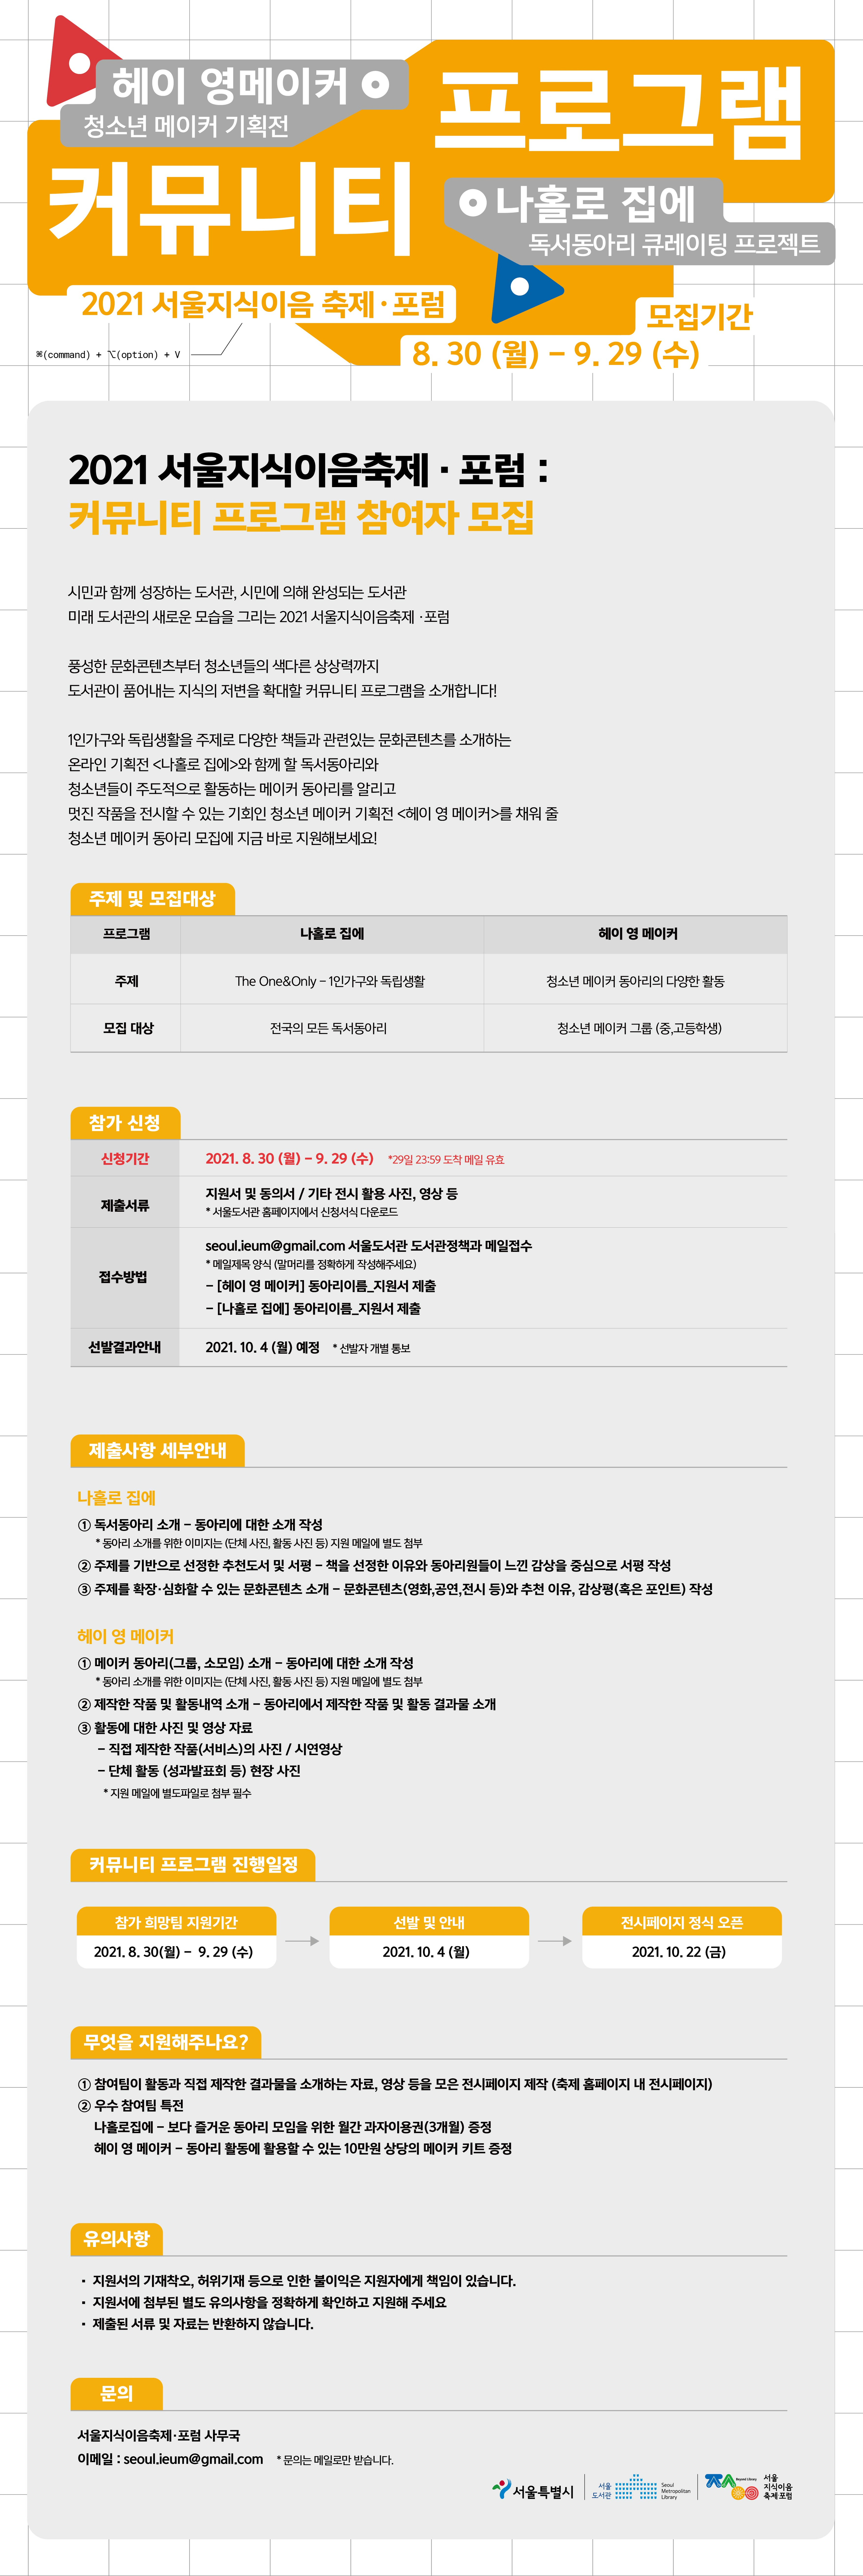 서울지식이음축제·포럼 행사 포스터(이미지 내용 본문에 포함되어 있음)